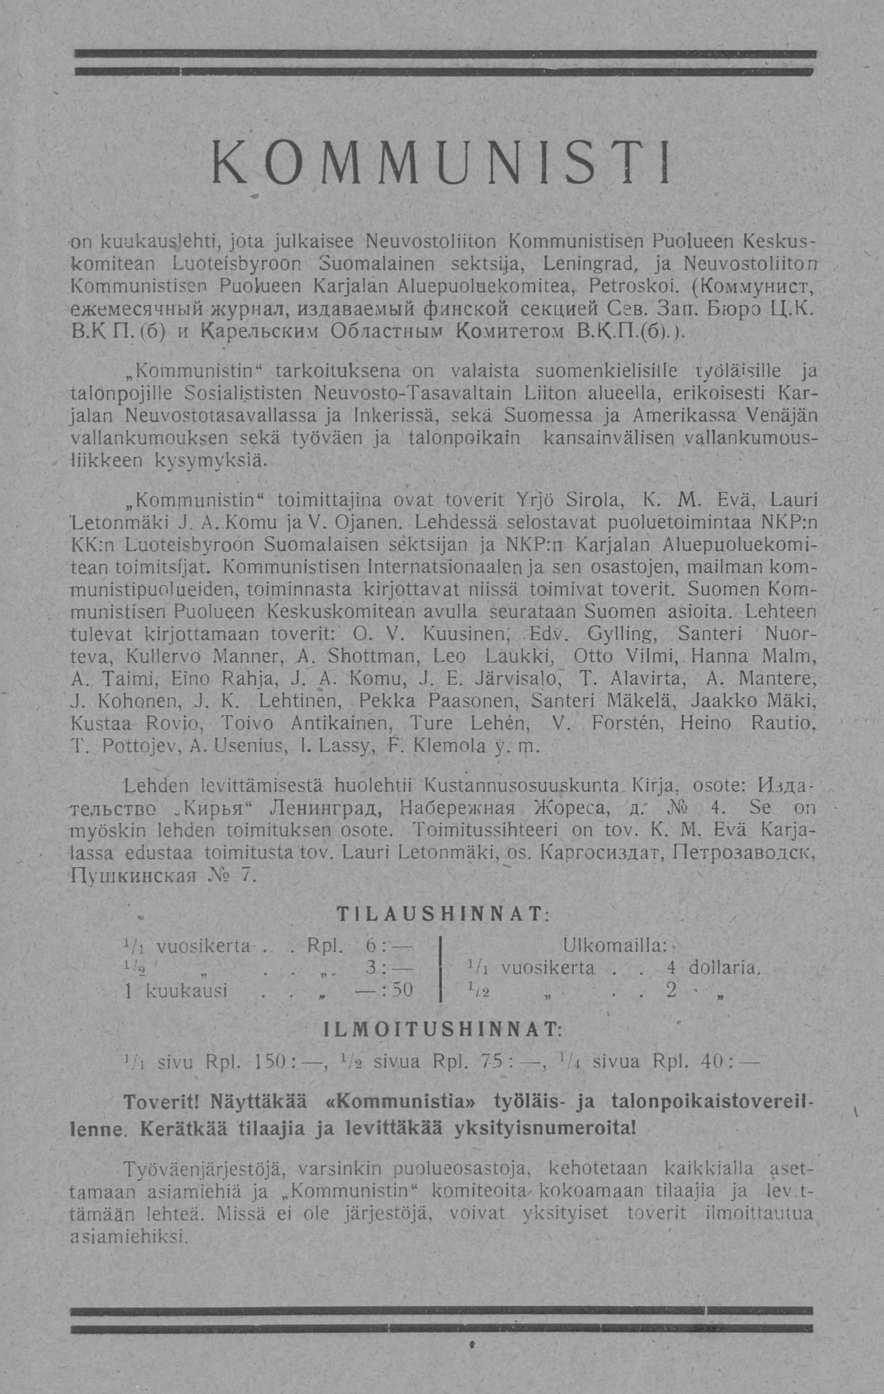 . K 0 M M U N IS T on kuukauslehti, jota julkaisee Neuvostoliiton Kommunistisen Puolueen Keskuskomitean Luoteisbyroon Suomalainen sektsija, Leningrad, ja Neuvostoliiton Kommunistisen Puolueen